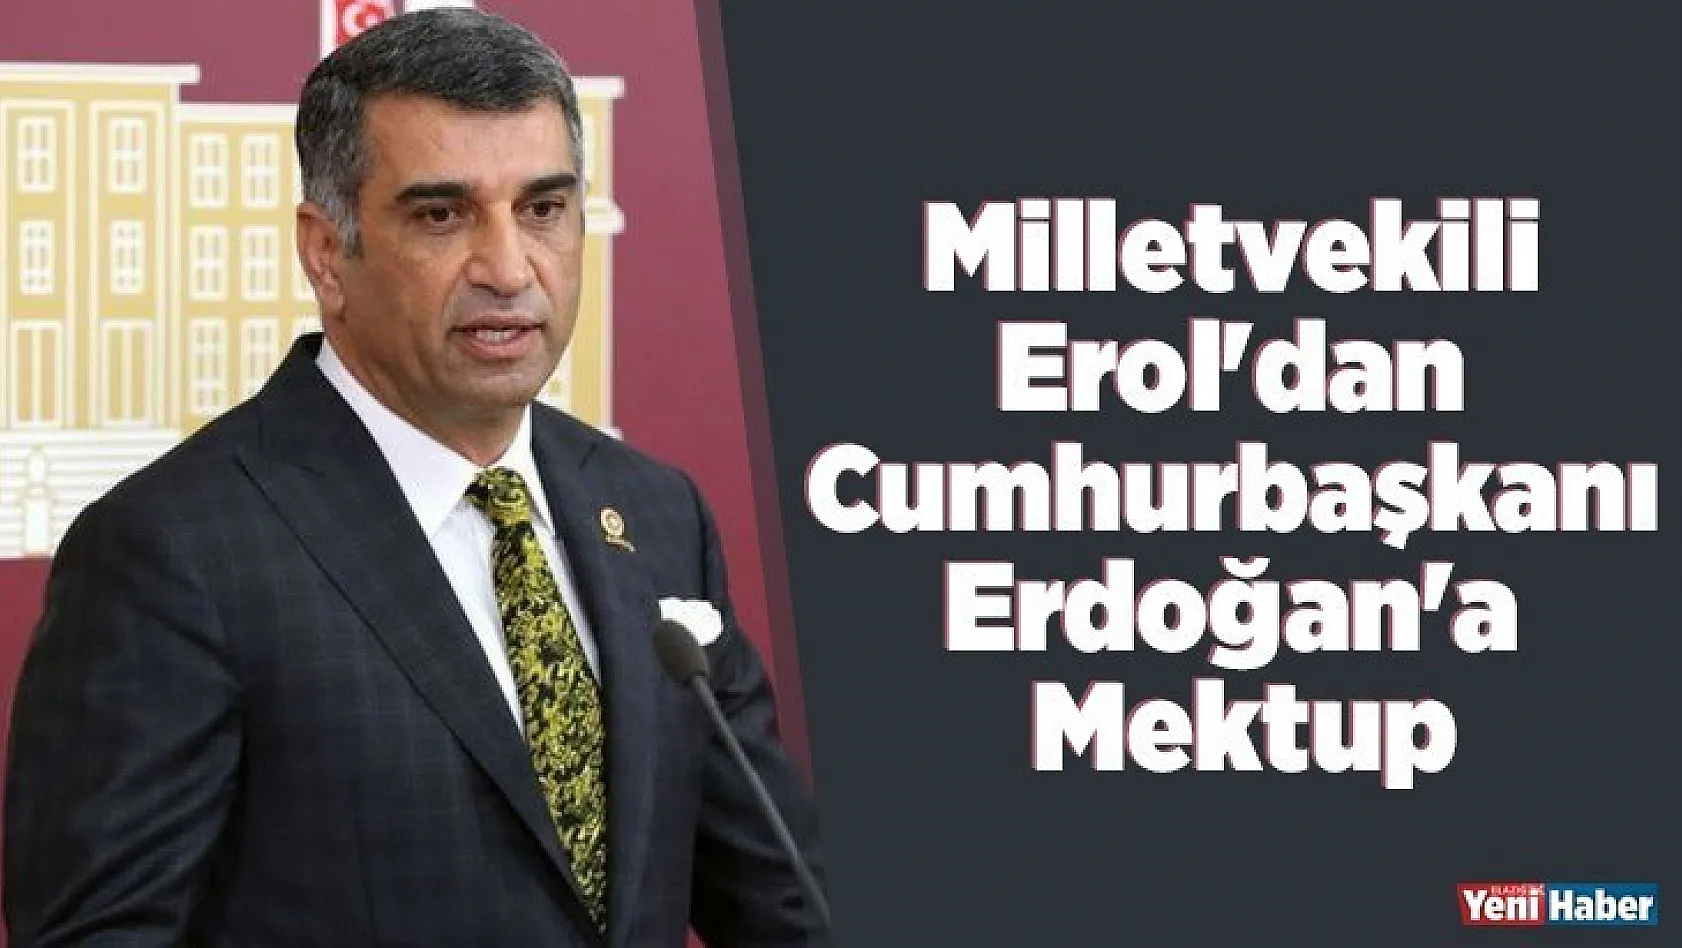 Milletvekili Erol'dan Cumhurbaşkanı Erdoğan'a Mektup